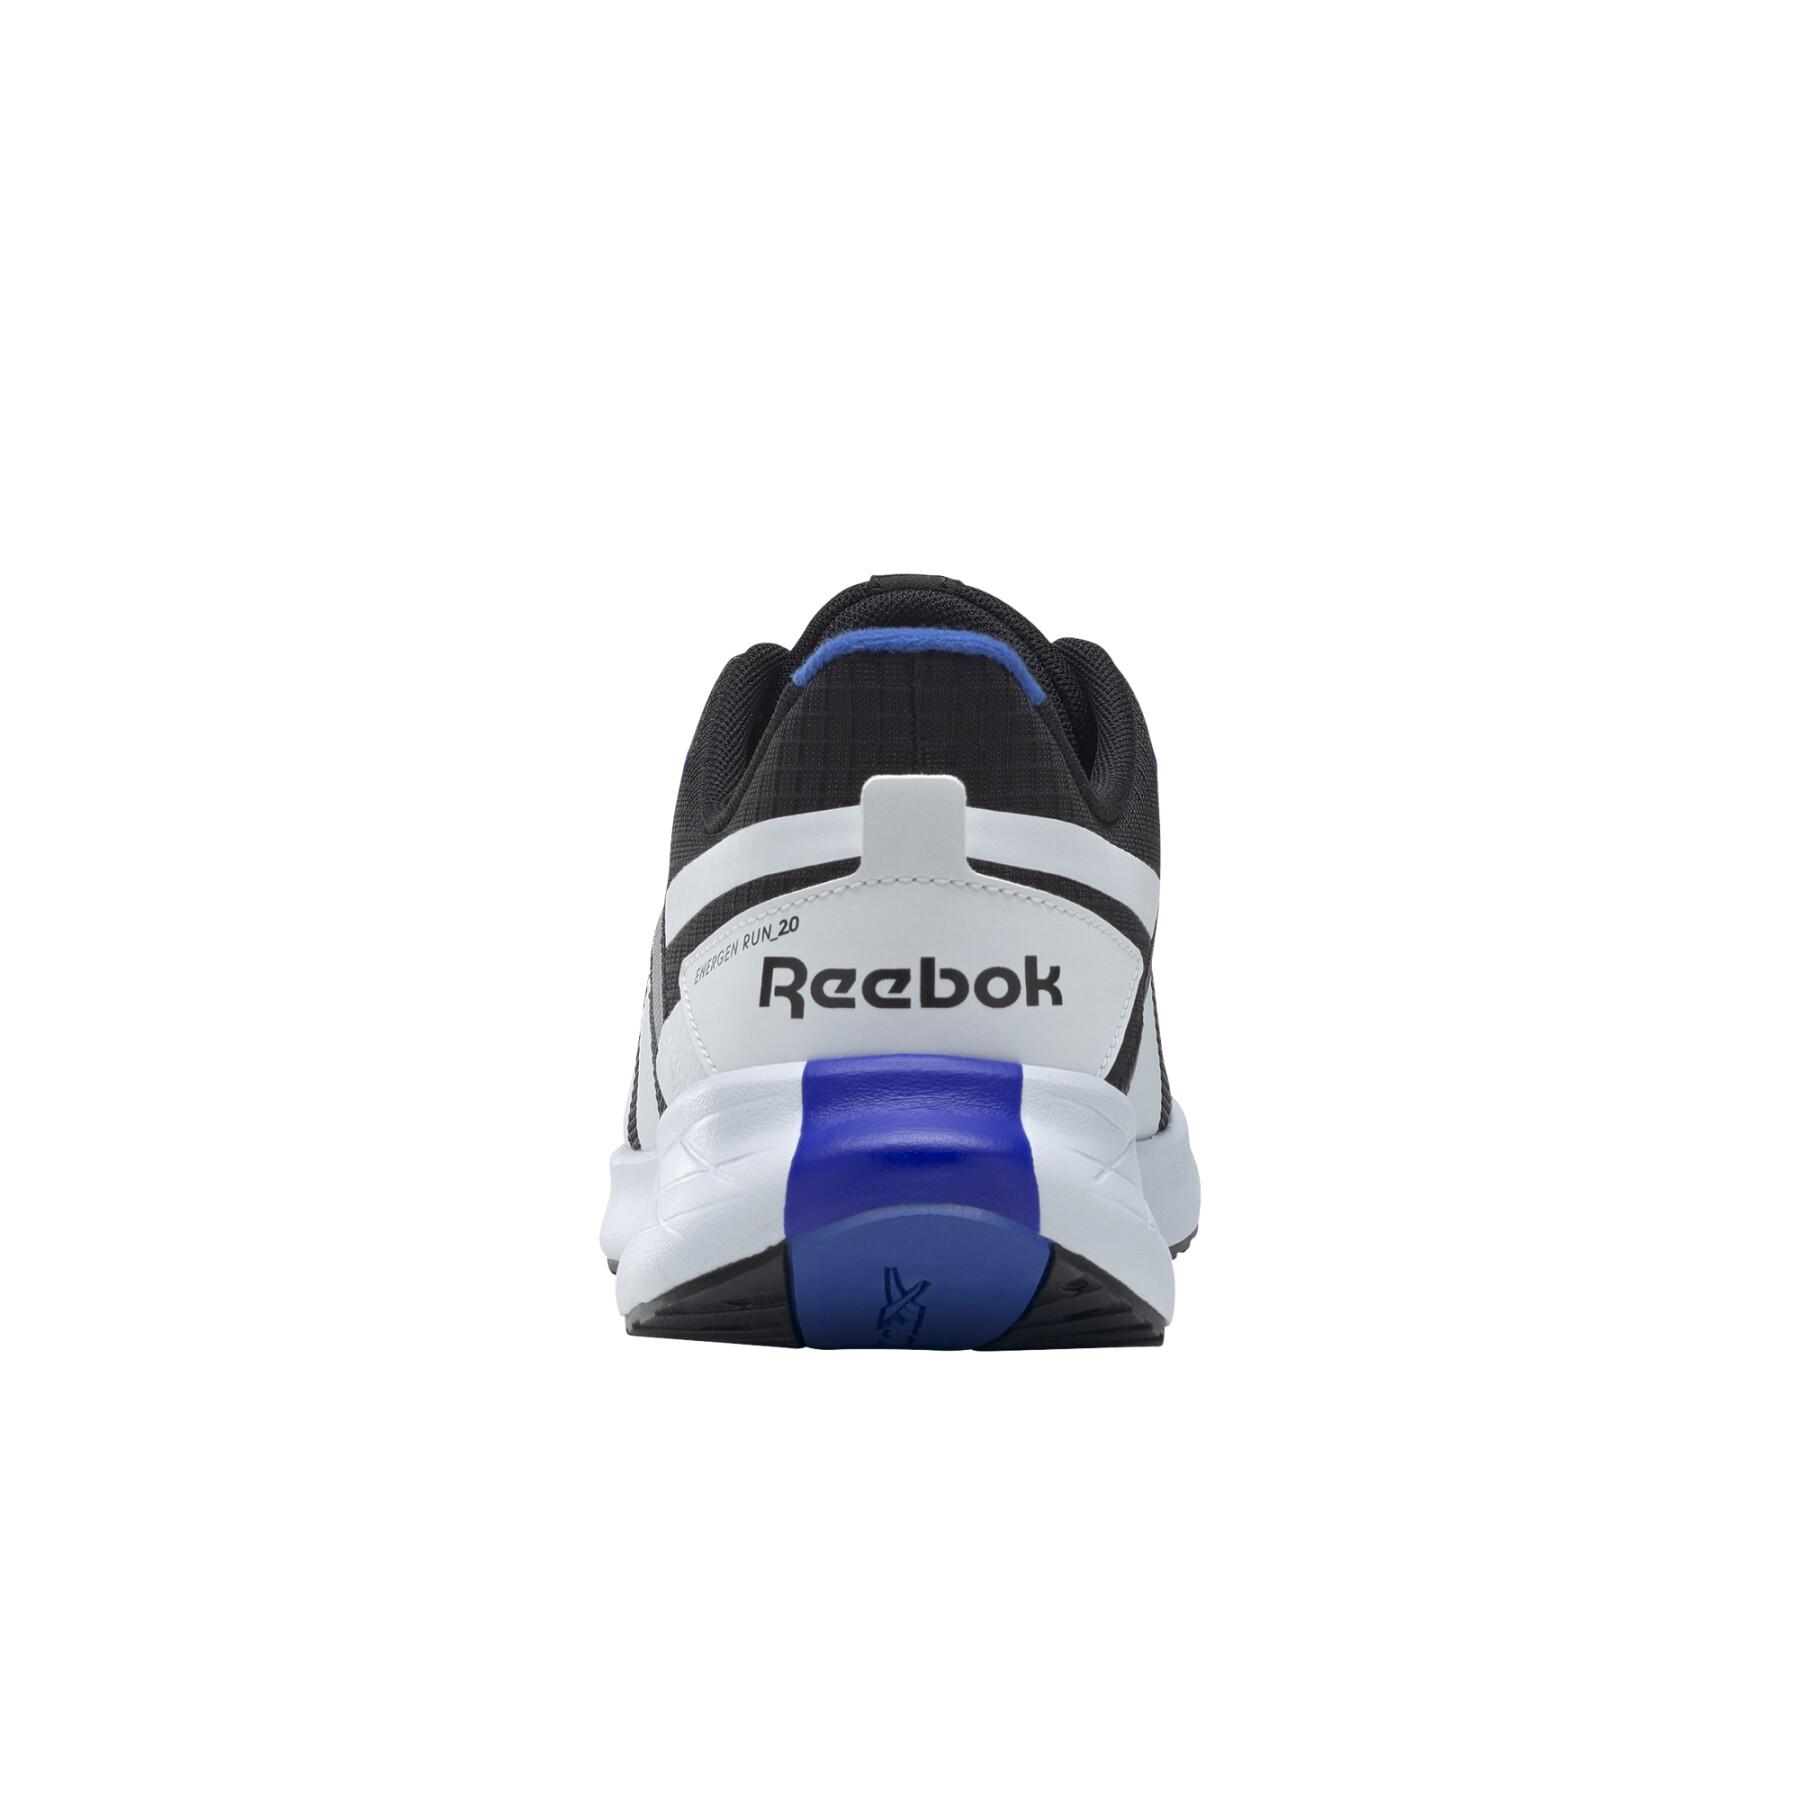 Zapatos Reebok Energen Run 2